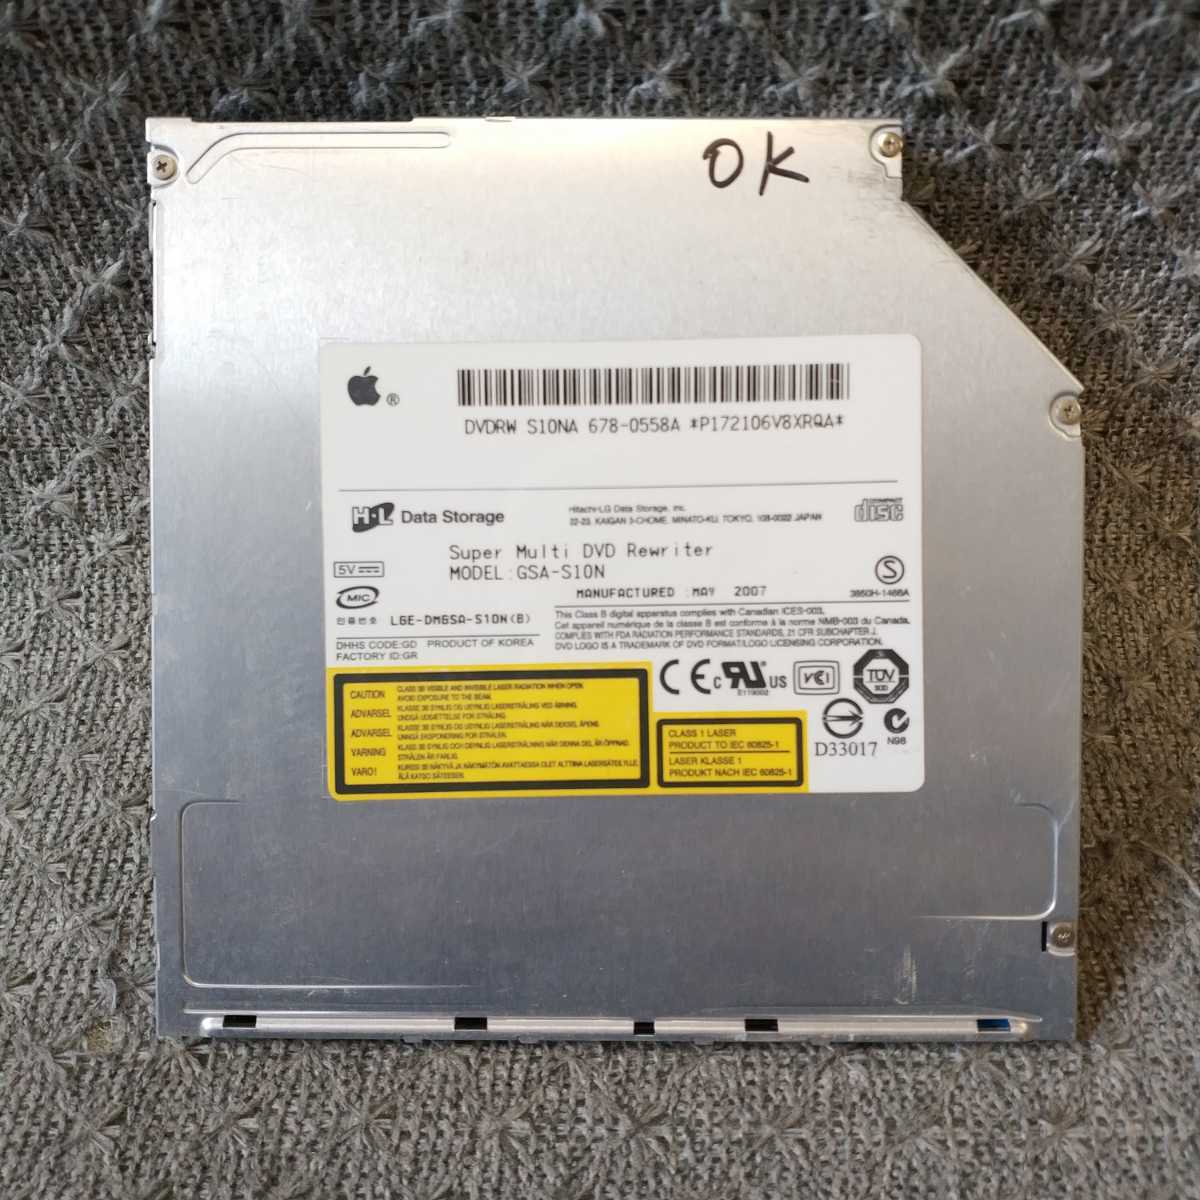 即日発 速達可 ★ MacBook Pro DVDスーパーマルチドライブ 日立 H・L S10NA GSA-S10N 9.5mm ATAPI (IDE) スロットイン ★動作確認済 D702の画像1